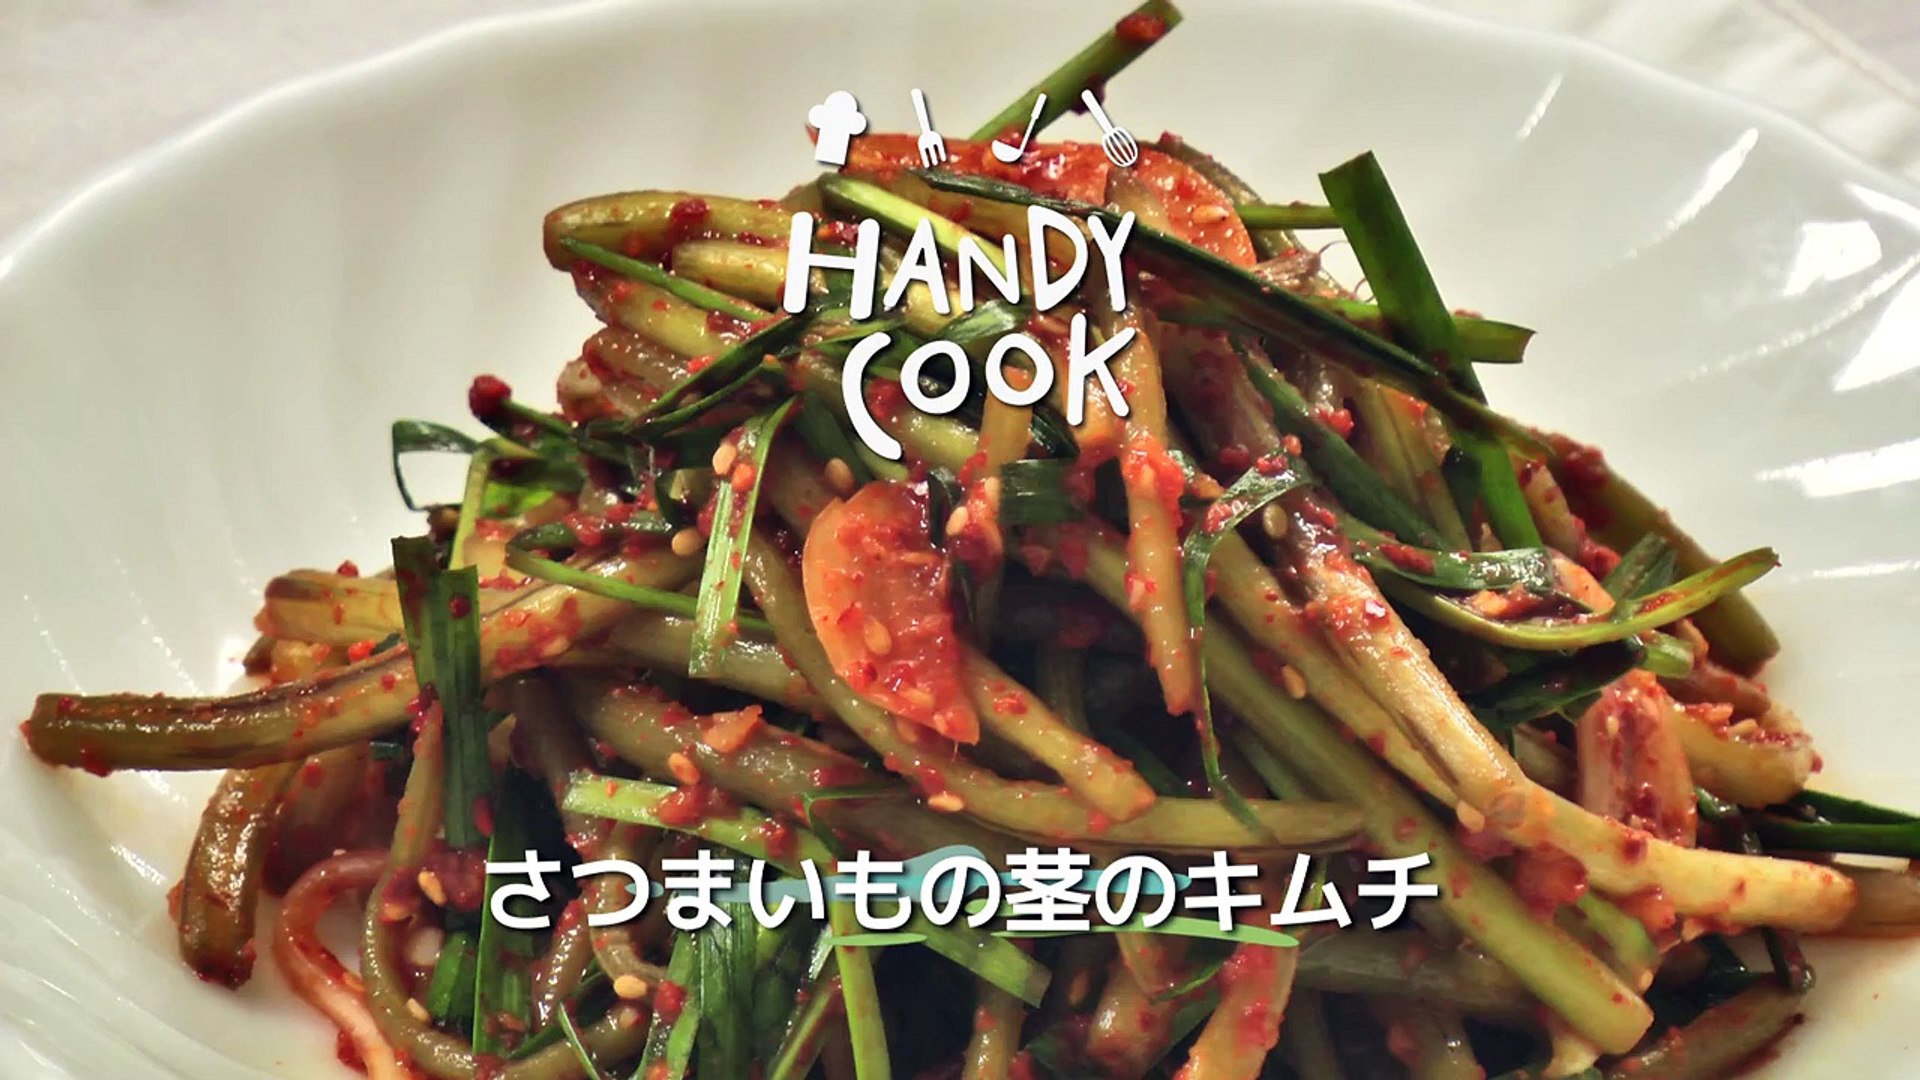 さつまいもの茎のキムチ 고구마줄기김치 韓国料理レシピ By Handycook C7jktv7od6u Video Dailymotion